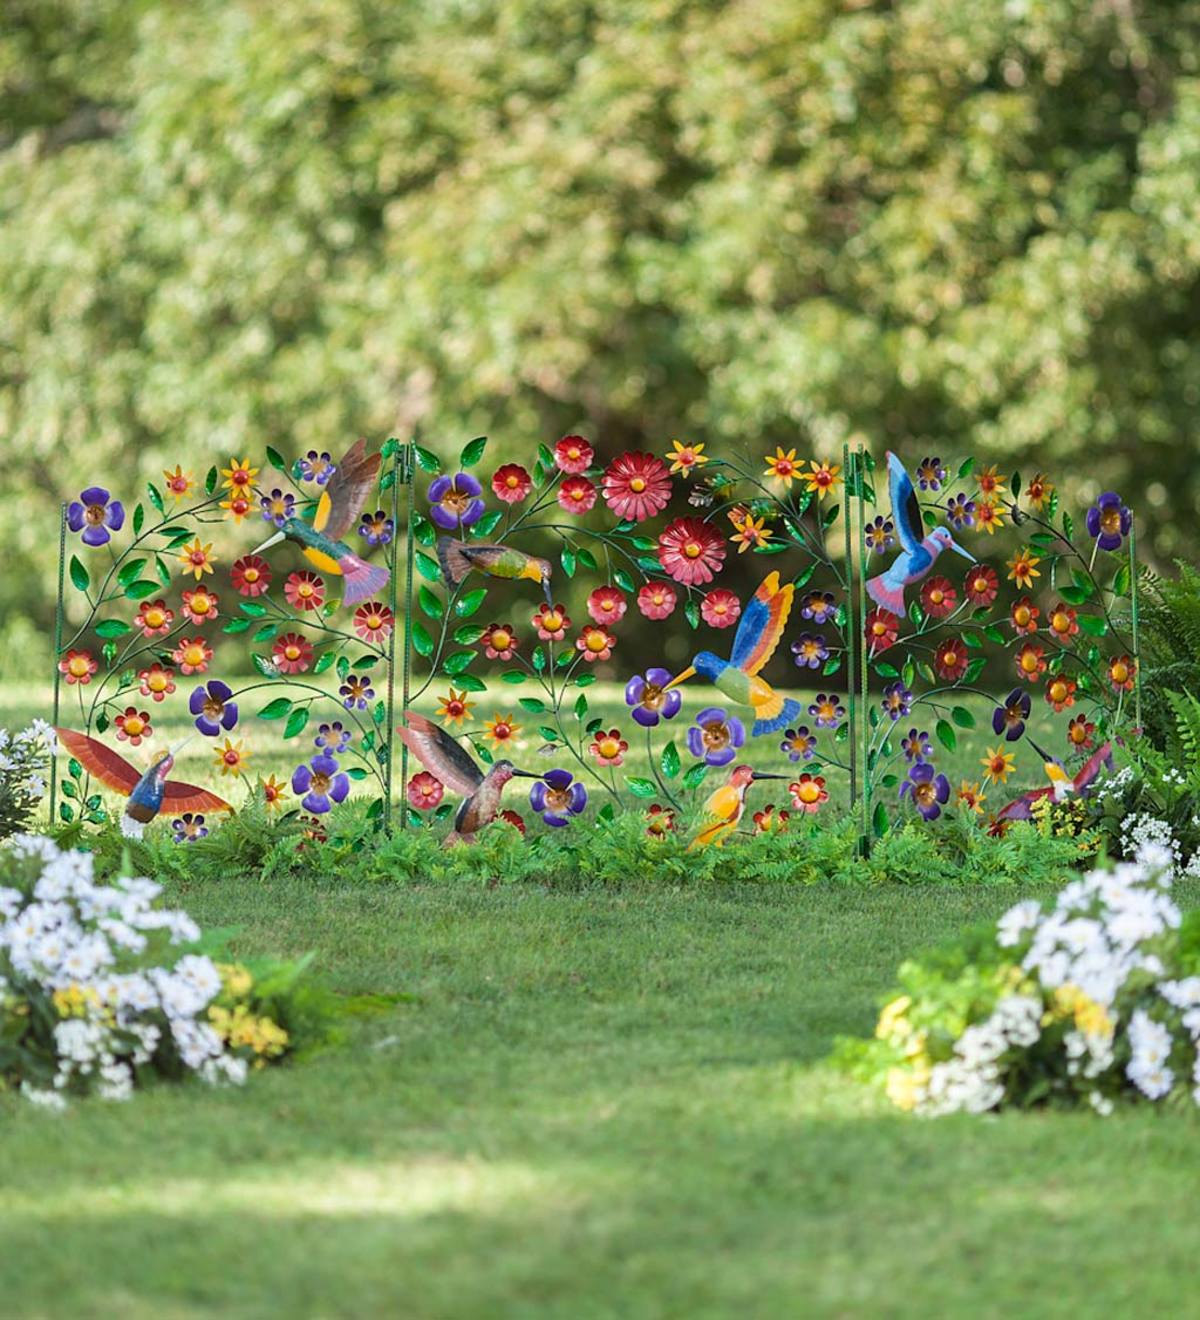 Metal 3-Panel Hummingbirds and Flowers Garden Screen